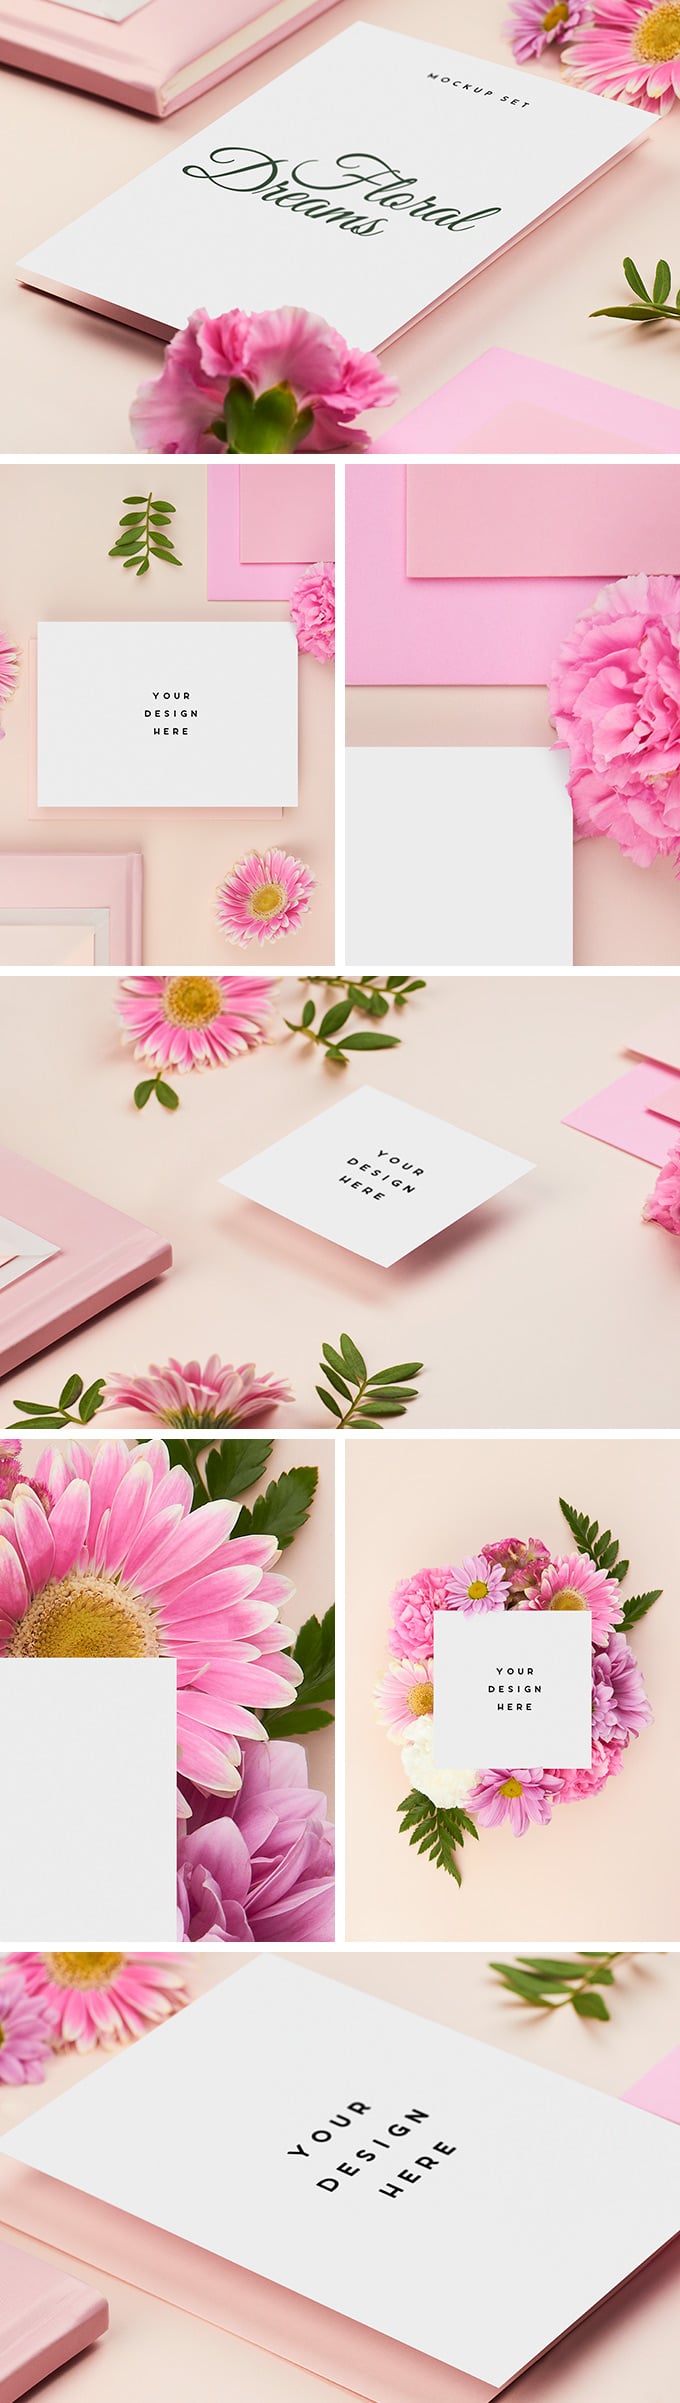 Download Free Mockups - Pink Floral